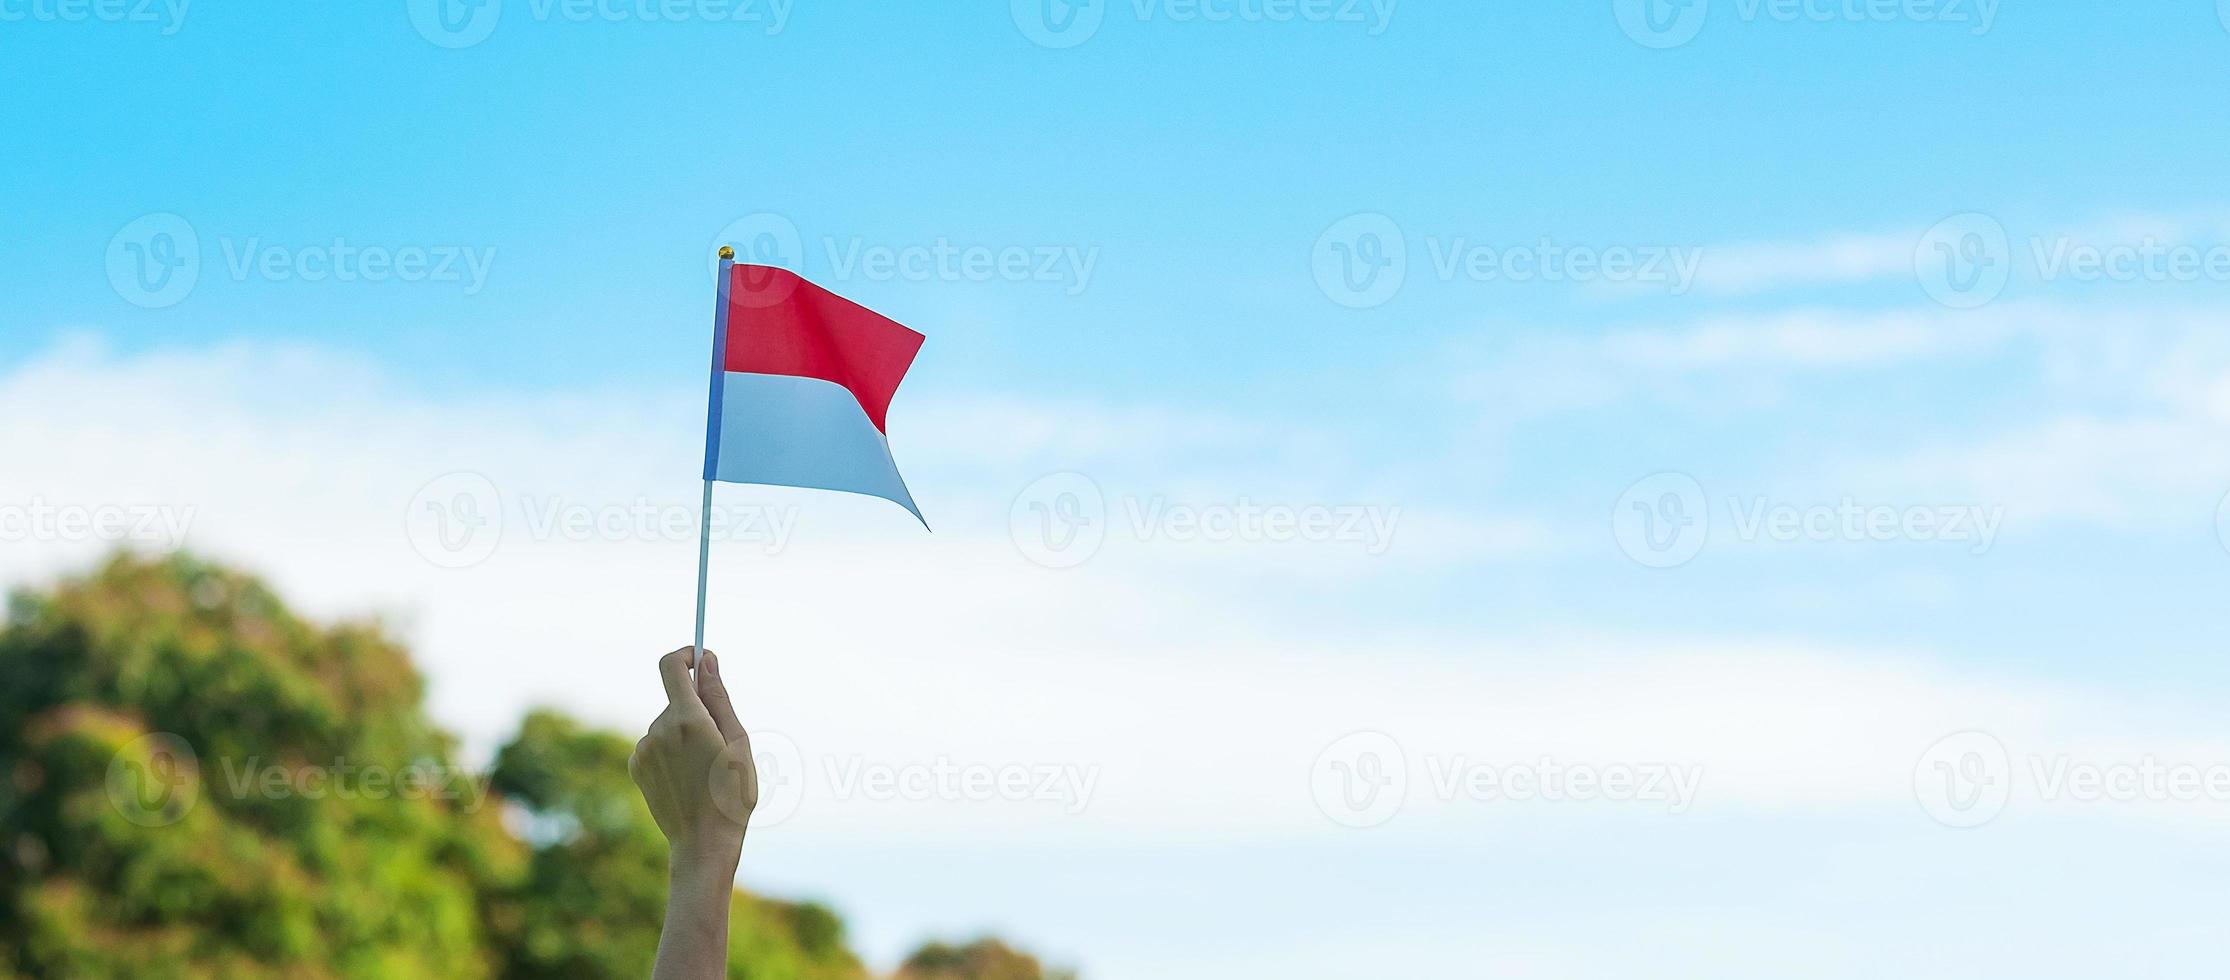 mano che tiene la bandiera dell'indonesia su sfondo blu cielo. giorno dell'indipendenza dell'indonesia, festa nazionale e concetti di celebrazione felice foto